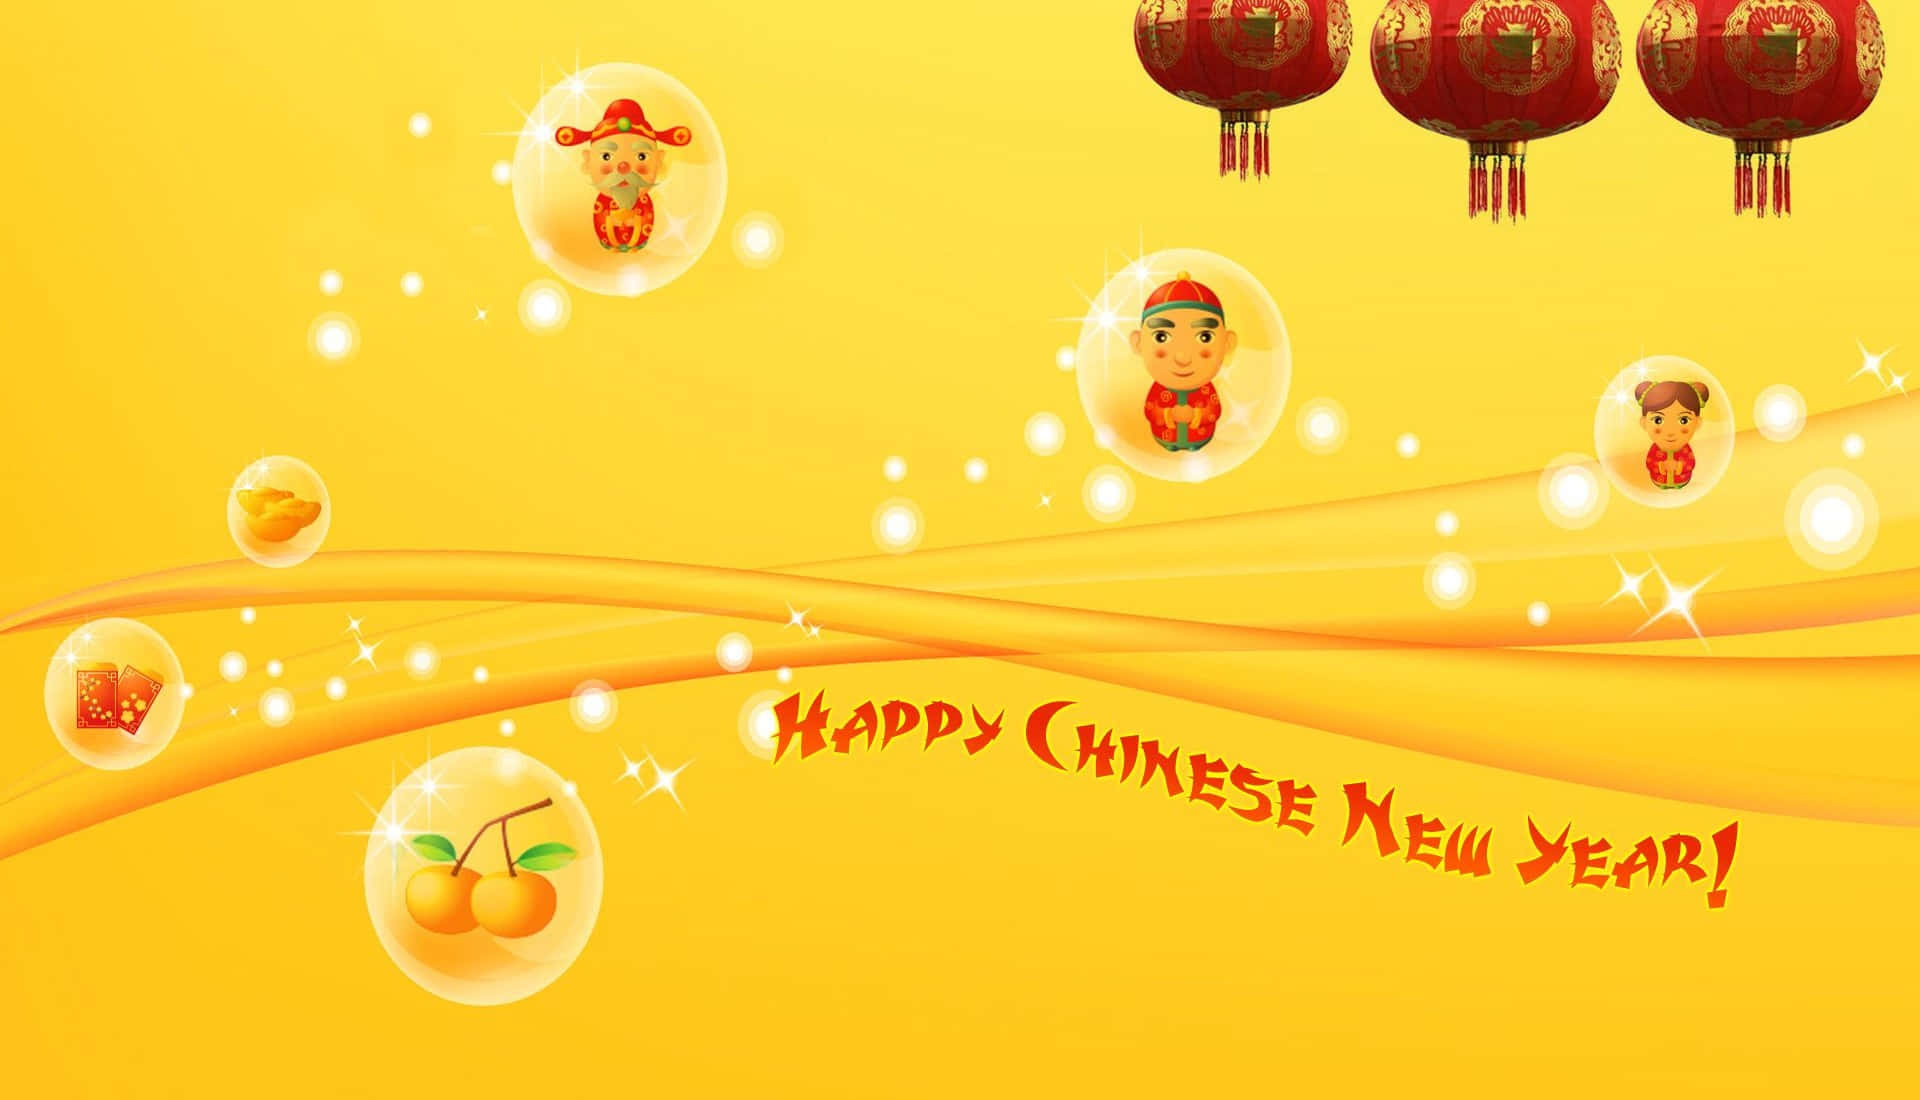 Celebrail Capodanno Cinese In Modo Ricco E Colorato